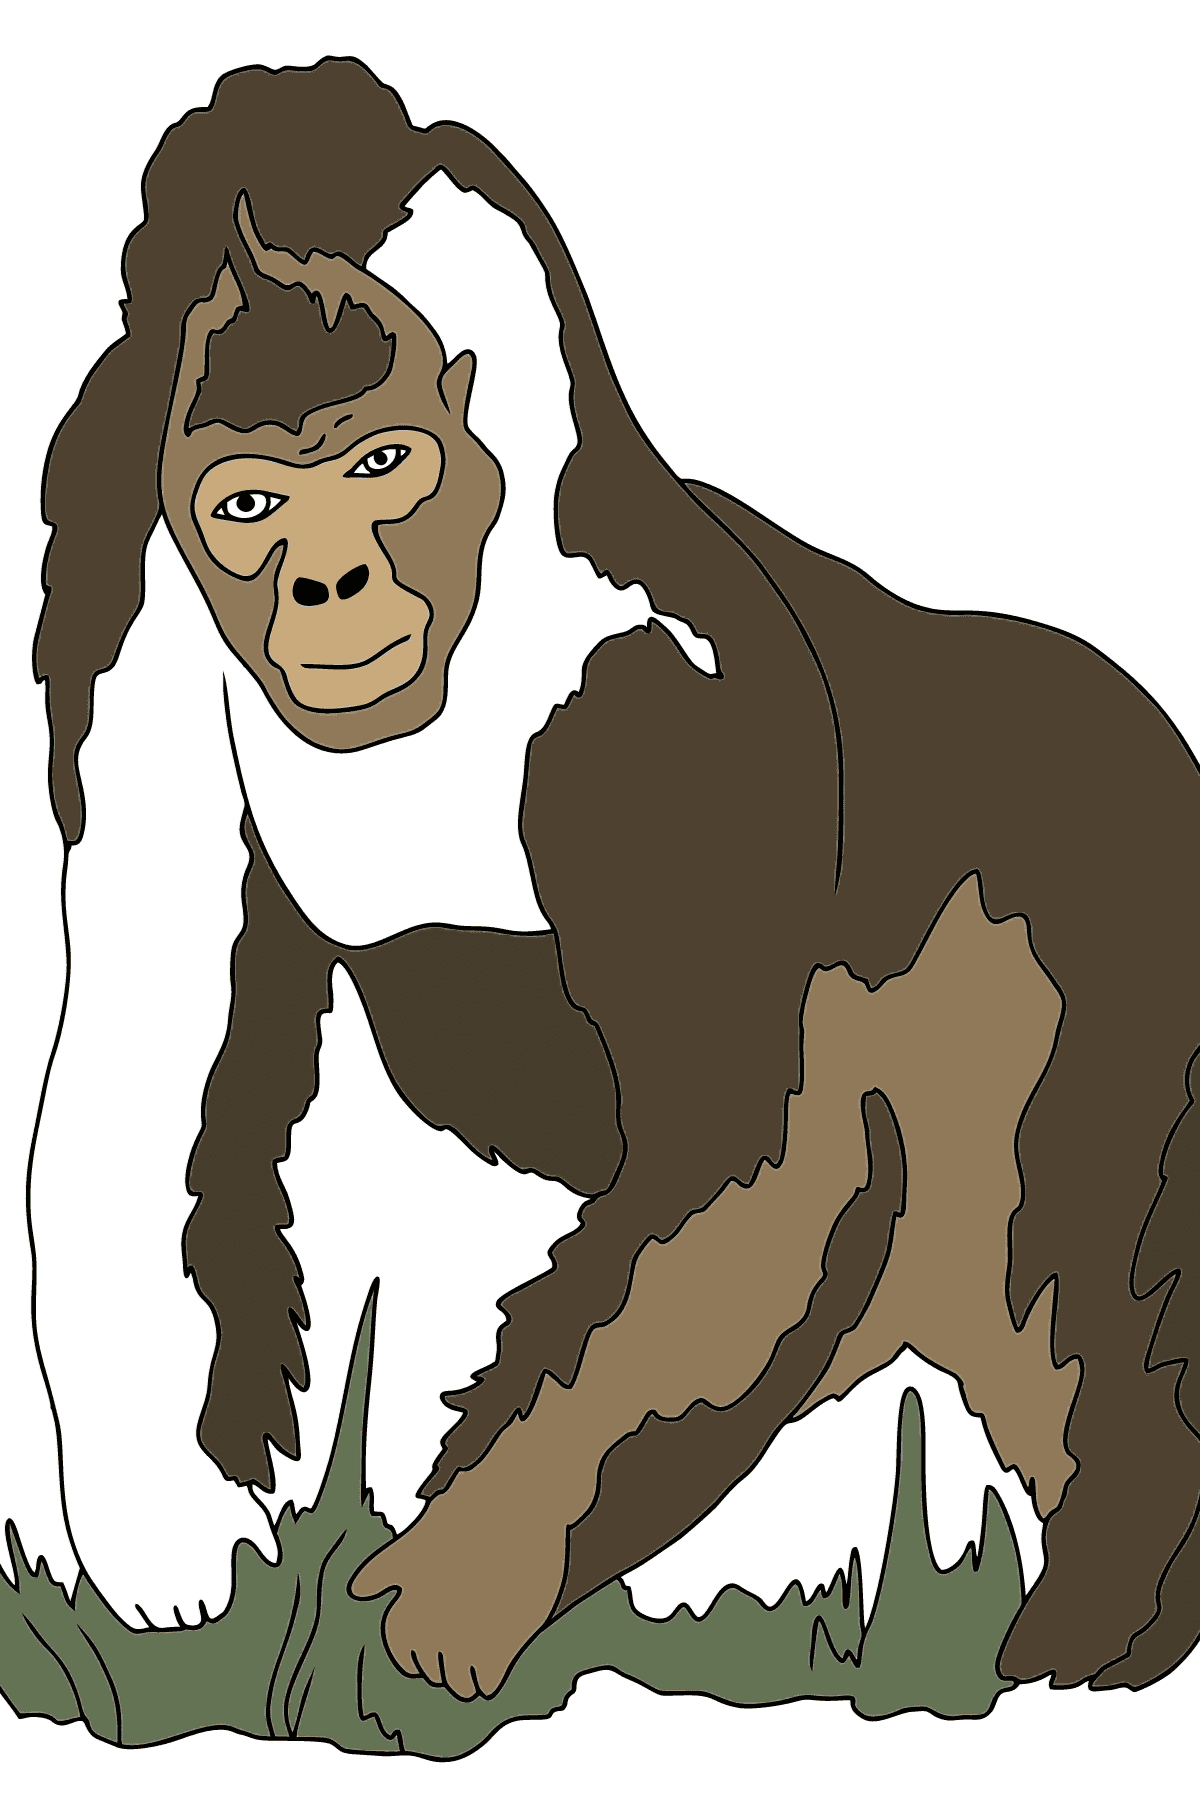 Ausmalbild - Ein echter Gorilla - für Kinder